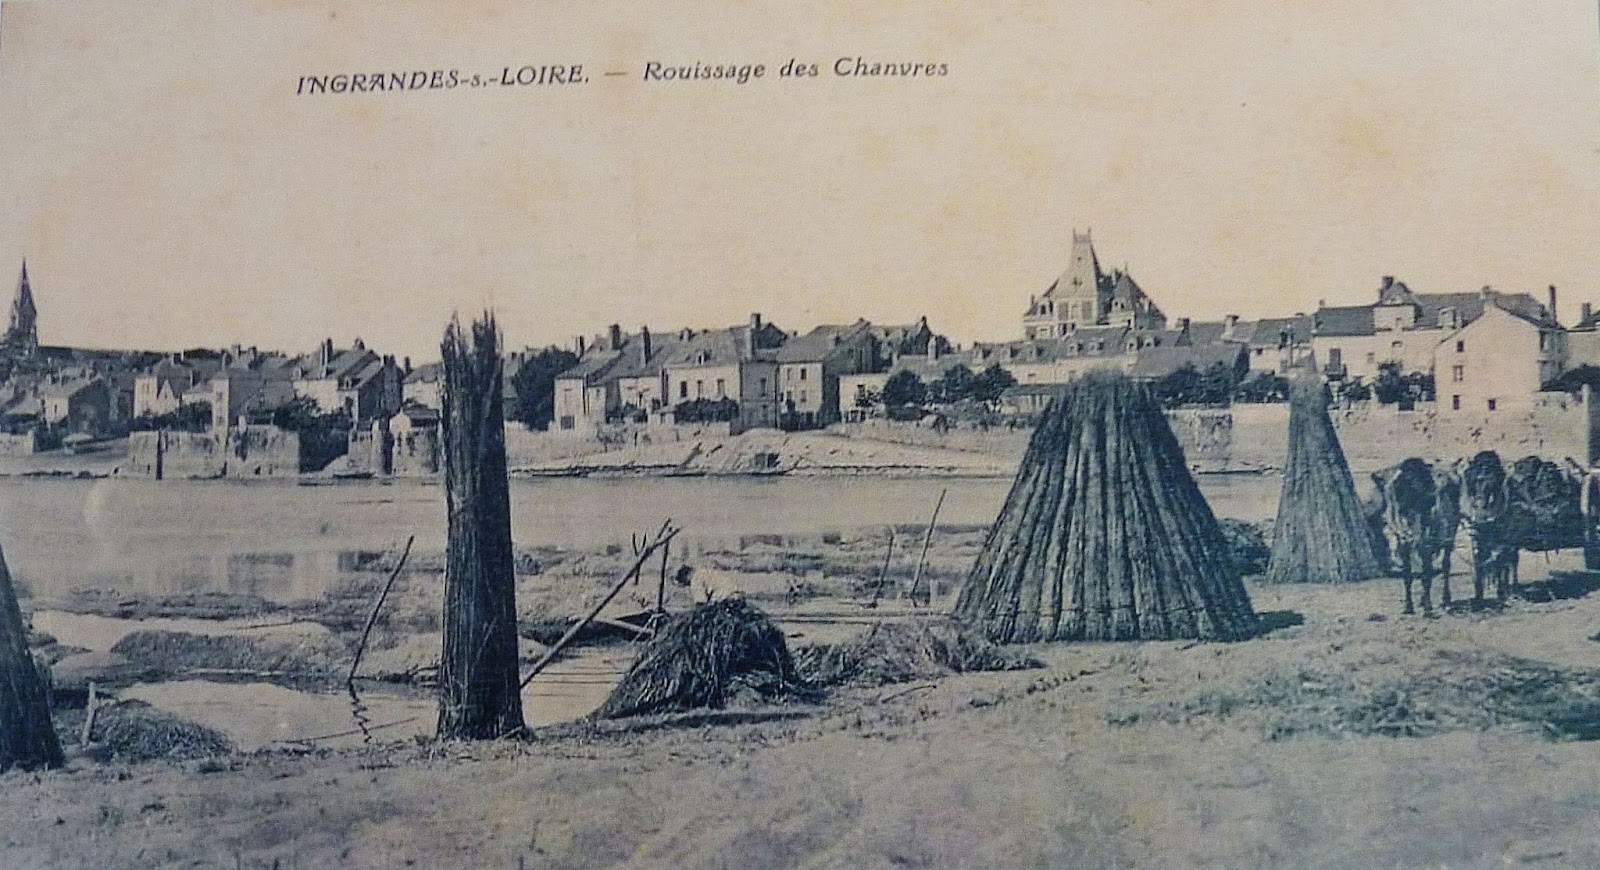 Ancienne image du rouissage de chanvre Ingrandes-sur-Loire